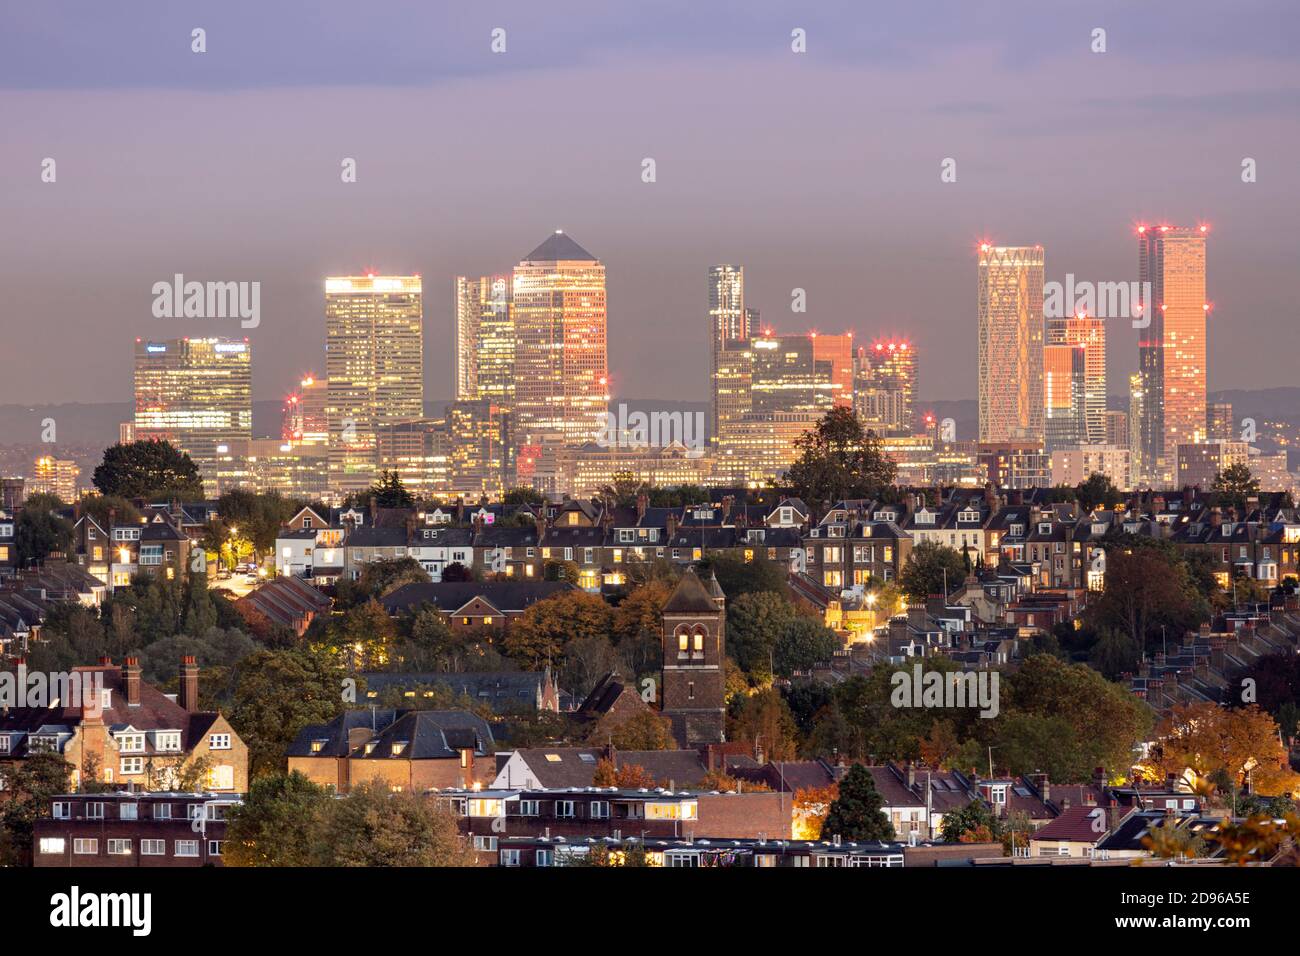 Royaume-Uni, Angleterre, Londres, vue sur les gratte-ciel depuis Muswell Hill du centre-ville de Londres avec des logements de banlieue à Crouch End et le quartier des affaires de Canary Wharf à Docklands, au crépuscule Banque D'Images